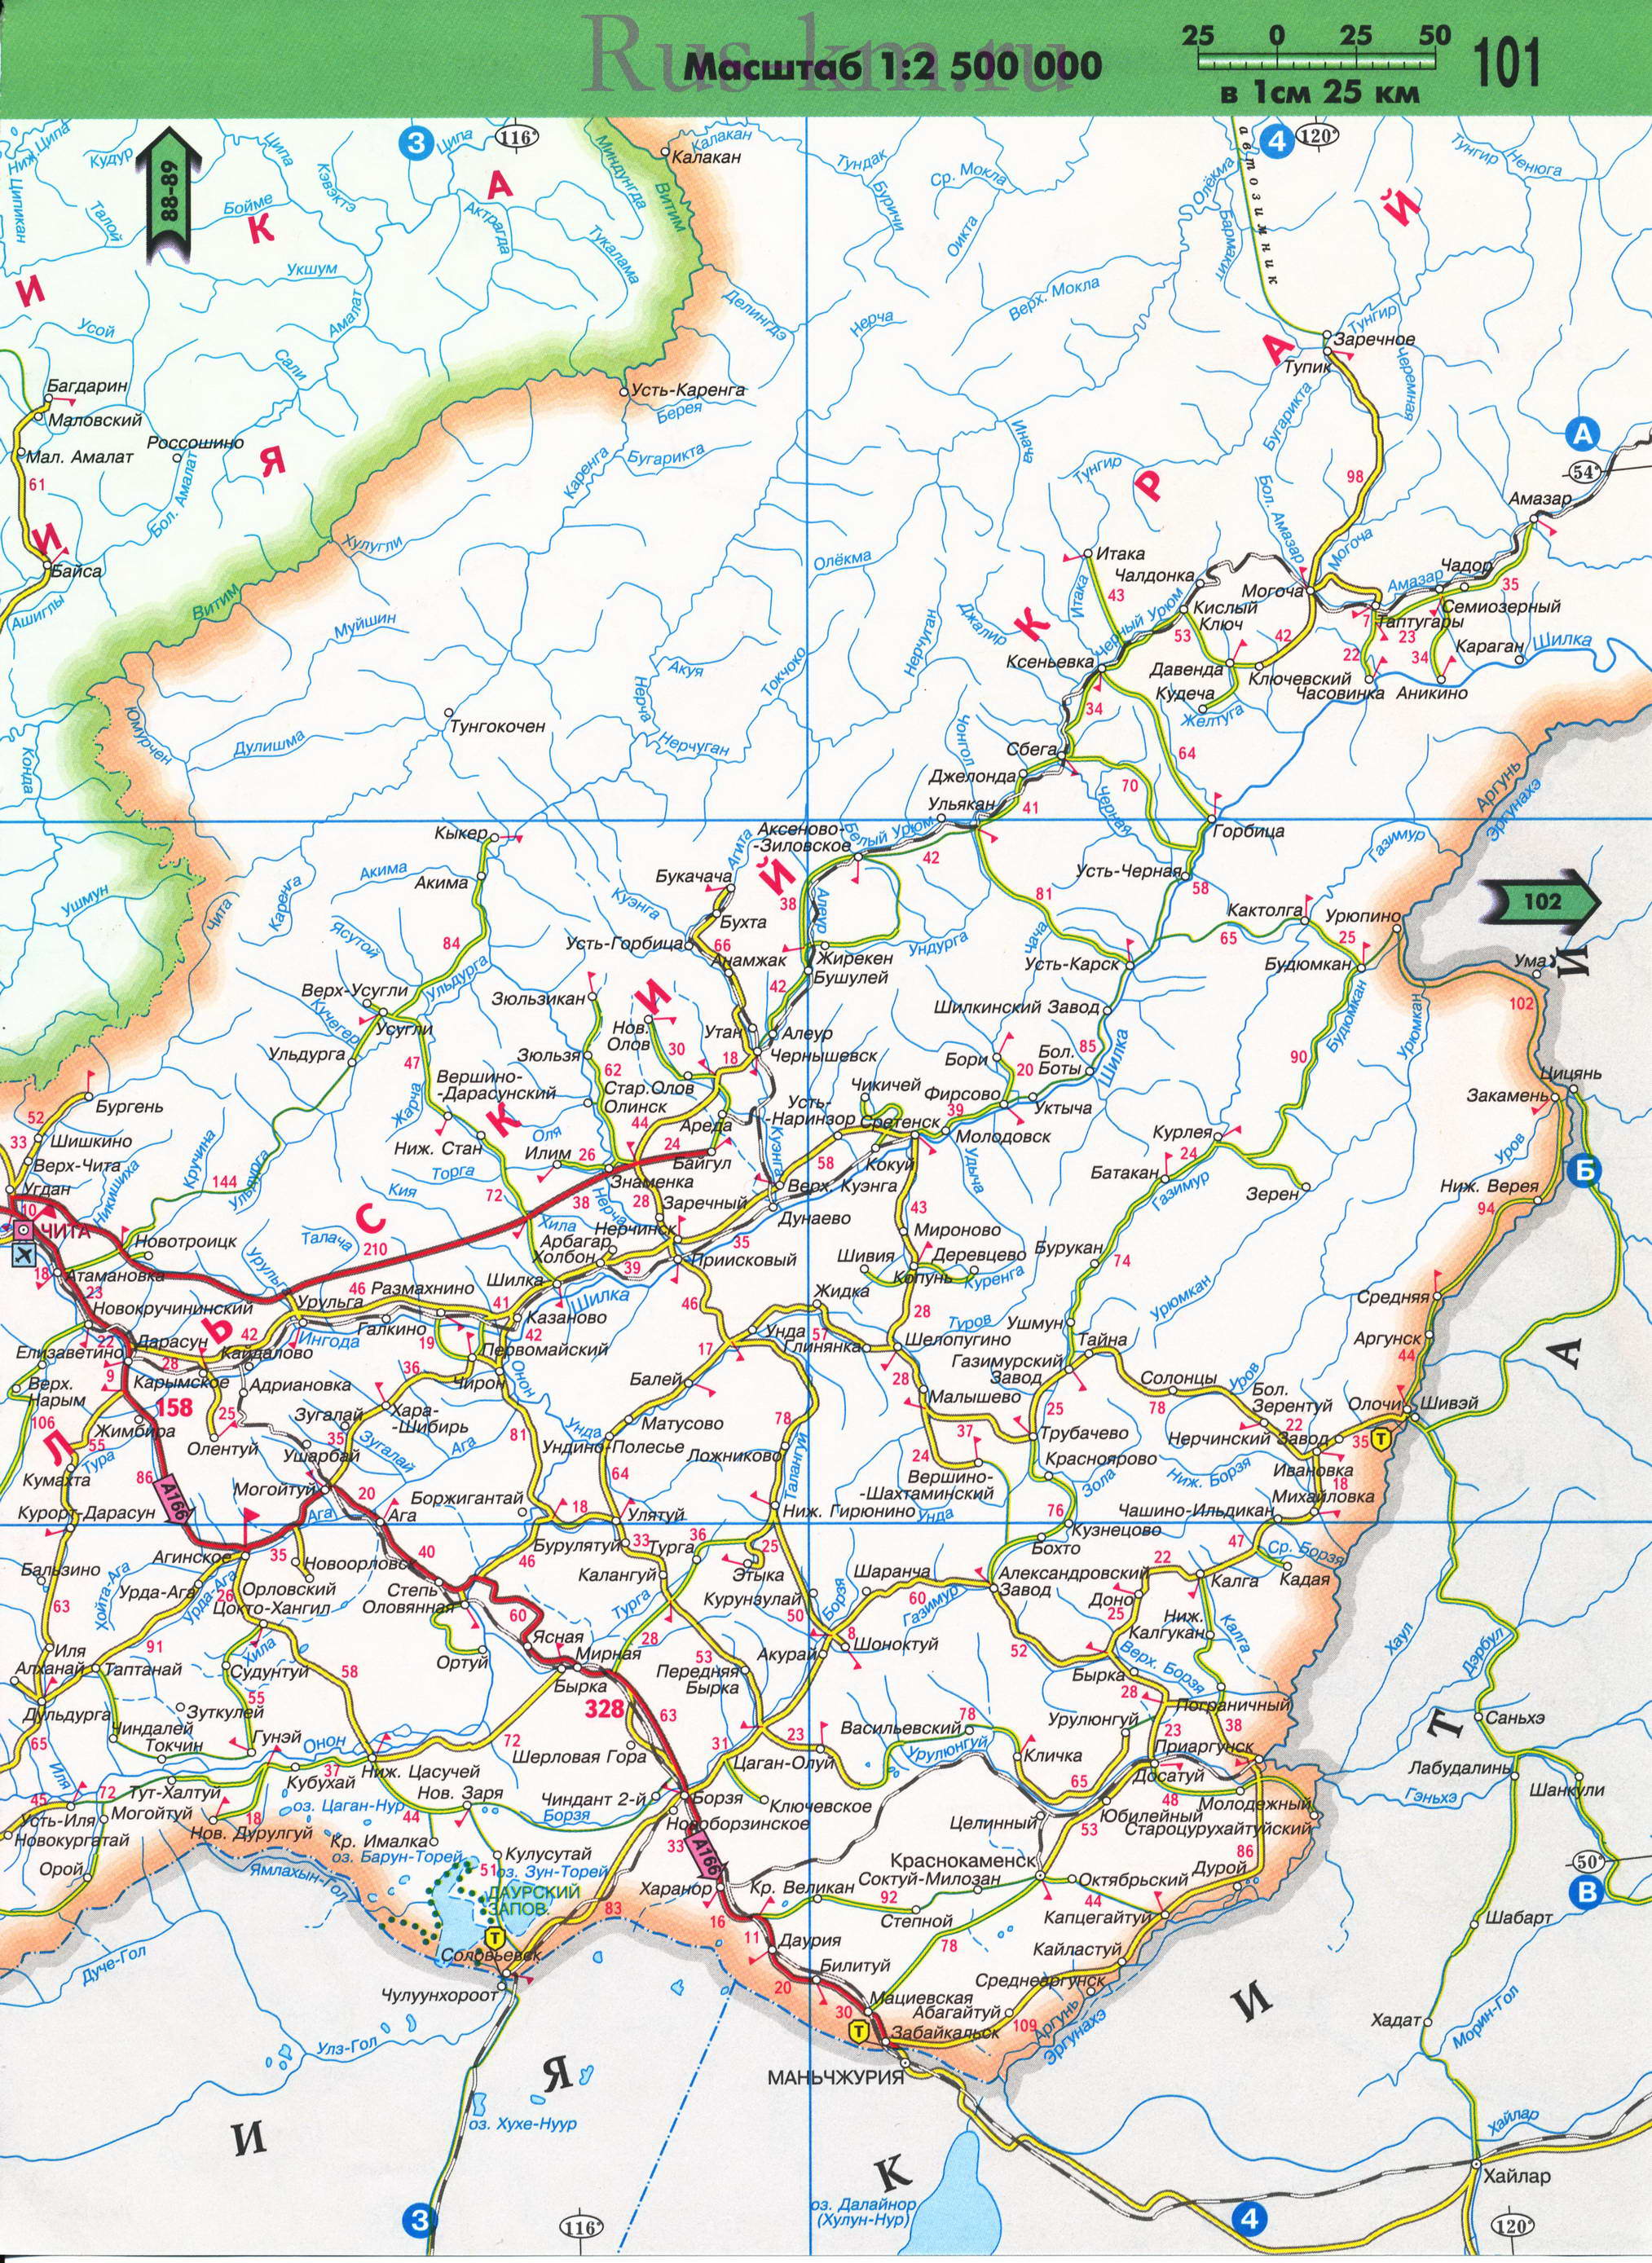 Карта Восточной Сибири автомобильная. Подробная карта автомобильных дорог Восточной Сибири из атласа России 2011 года, B2 - 